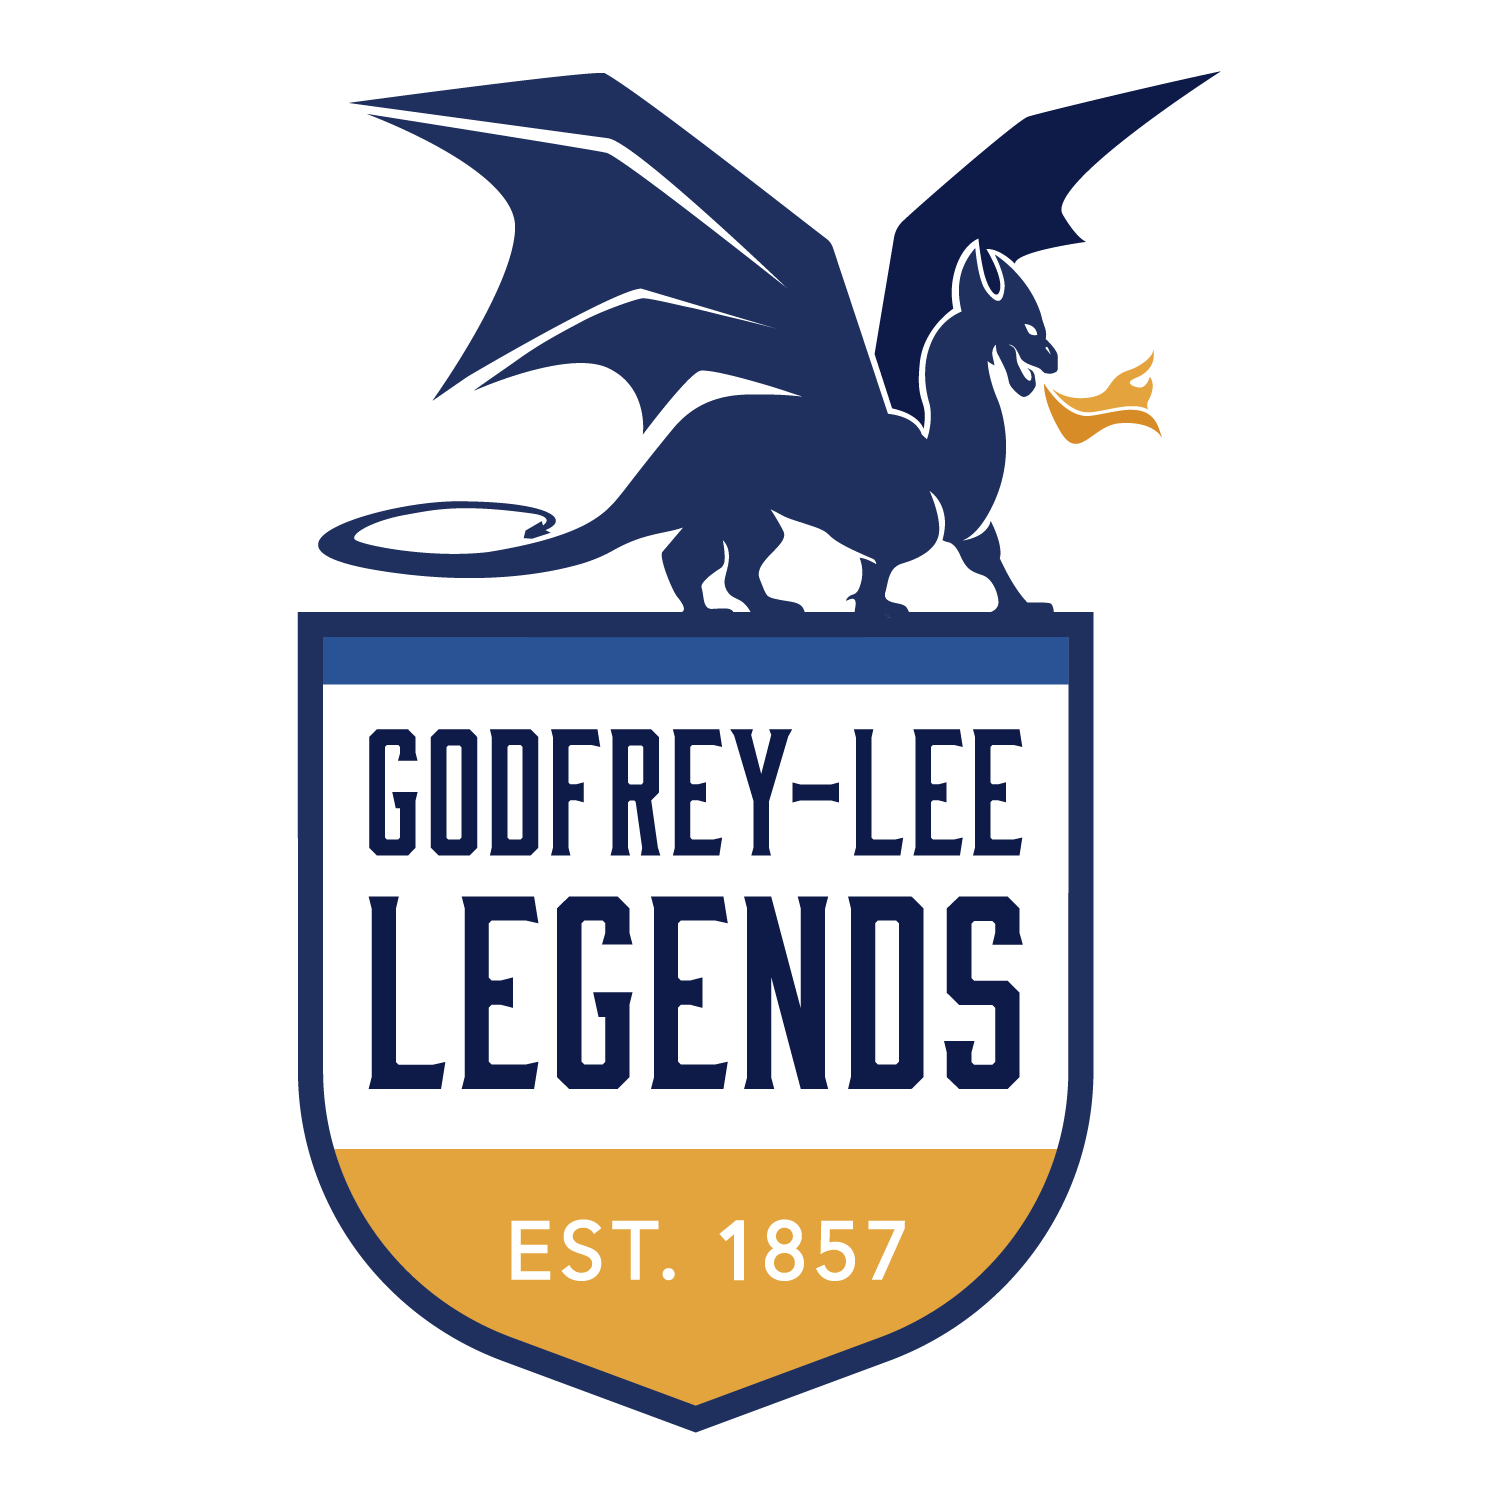 Godfrey-Lee Legends